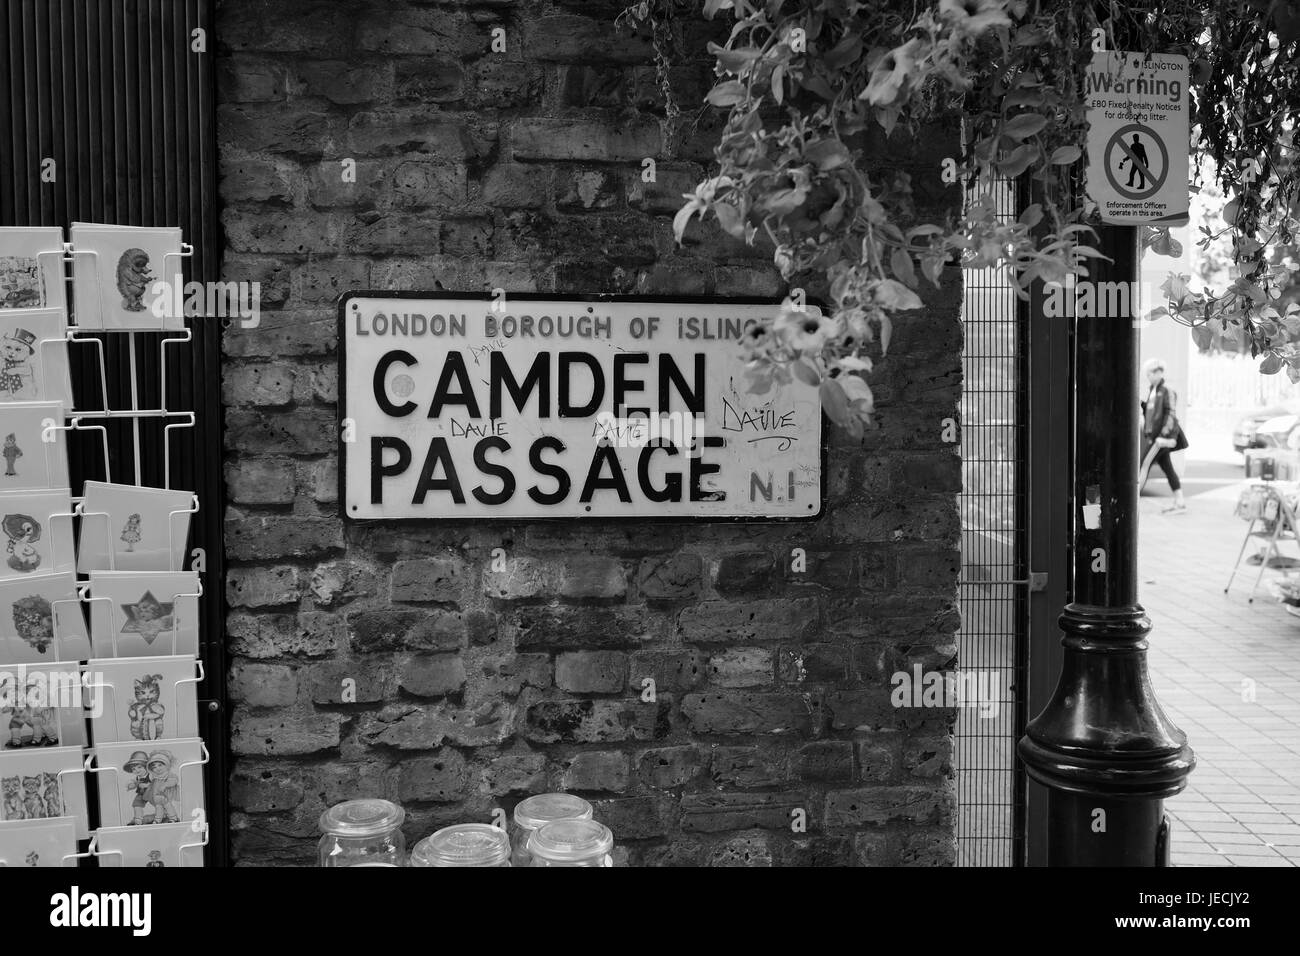 Camden Passage in der Nähe der Engel im London Borough of Islington.  Haus bis hin zu Antiquitäten. Stockfoto